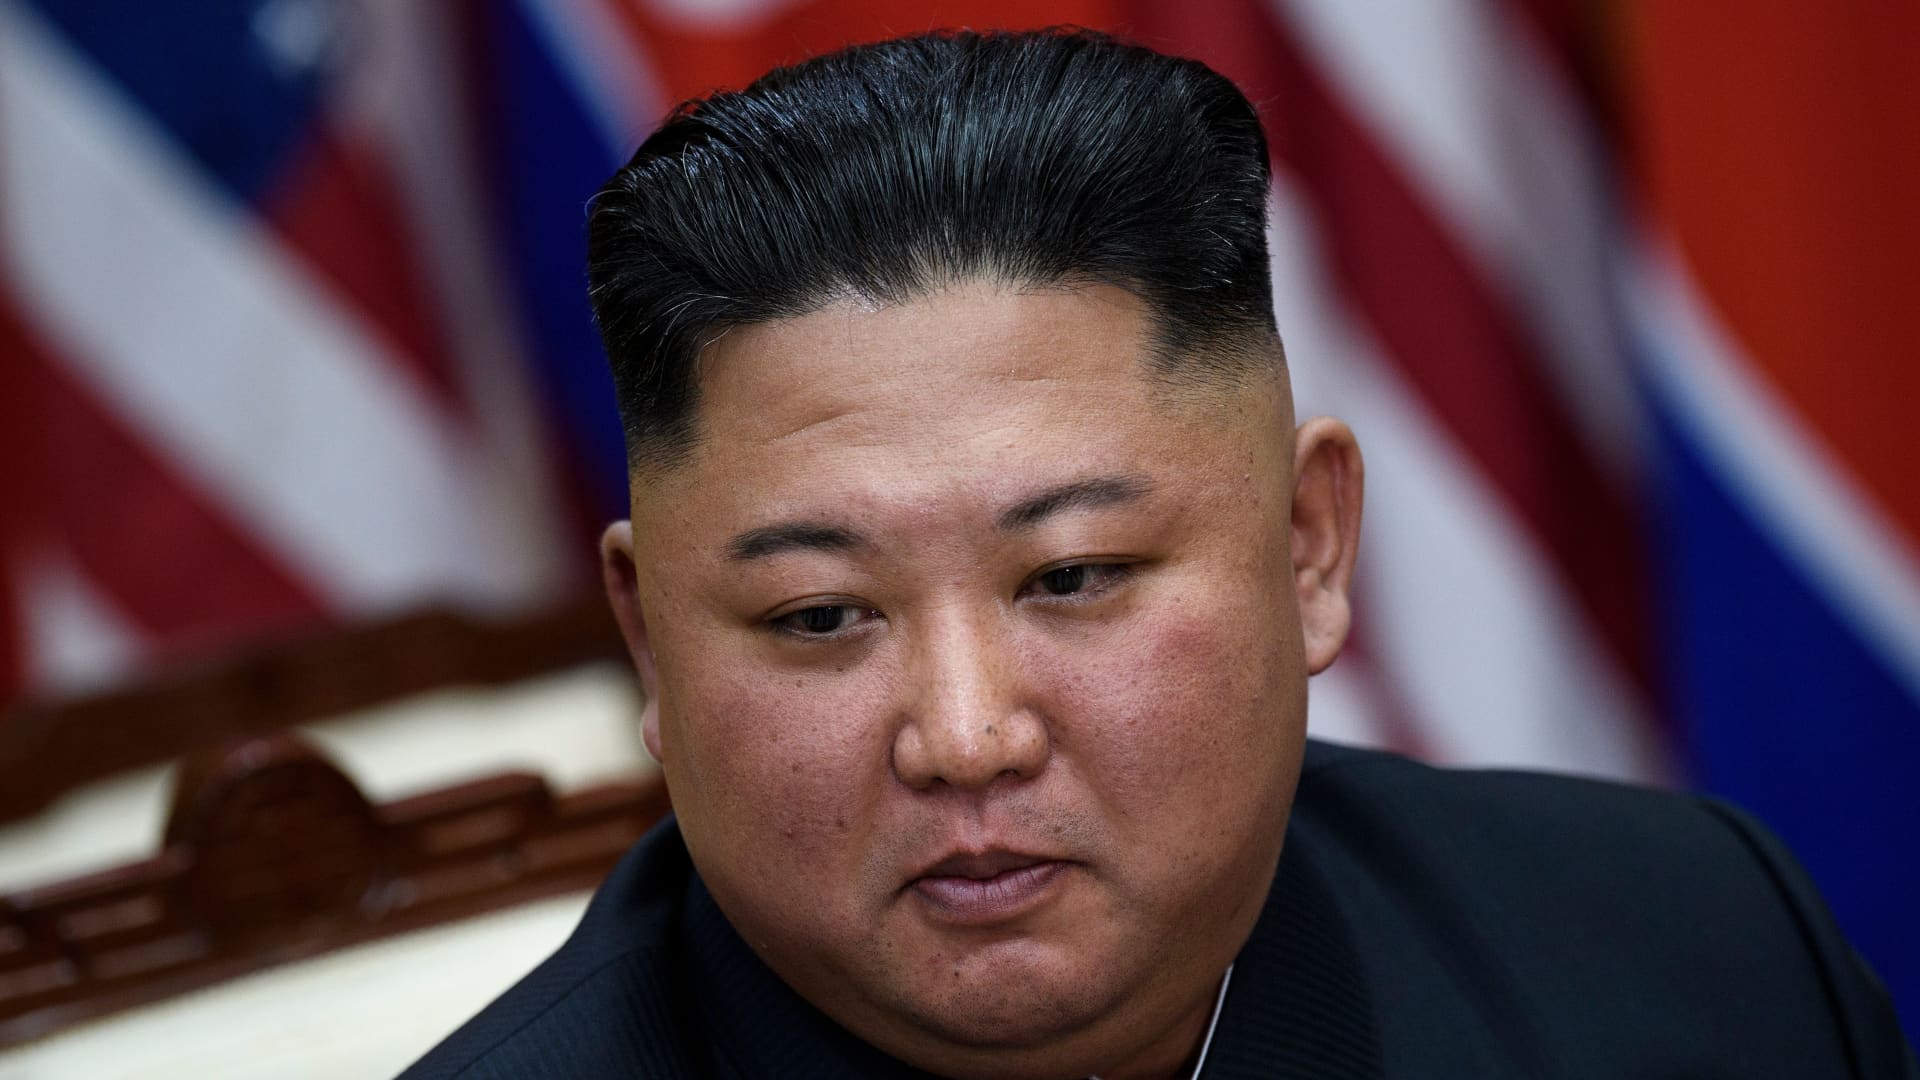 North Korea's leader Kim Jong Un in the Demilitarized Zone on June 30, 2019.